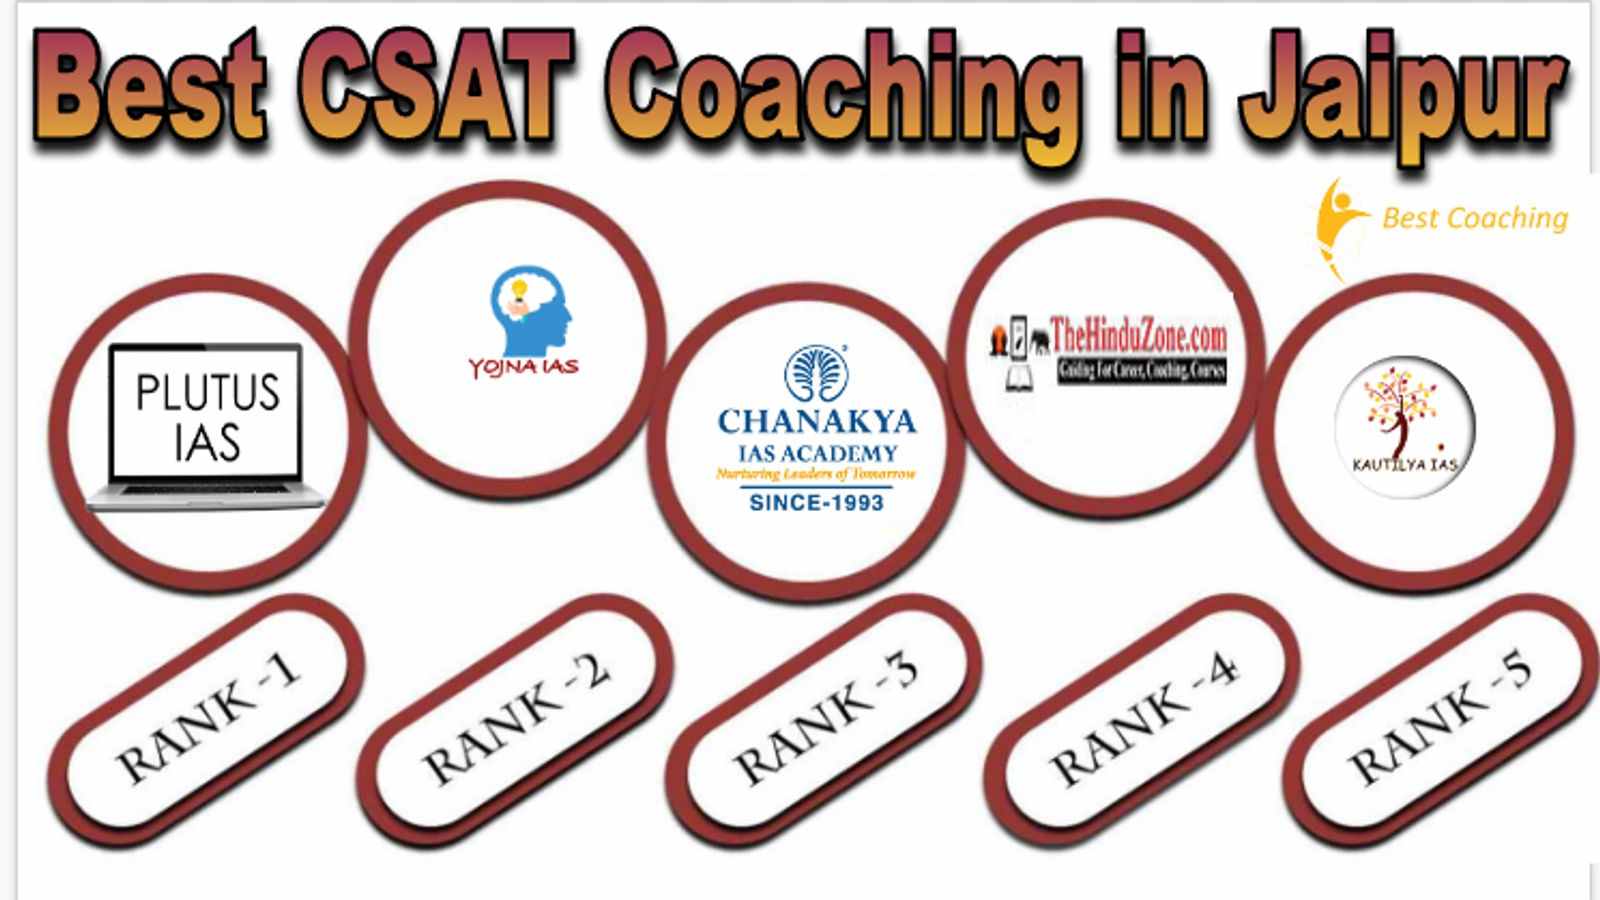 Best CSAT Coaching in Jaipur